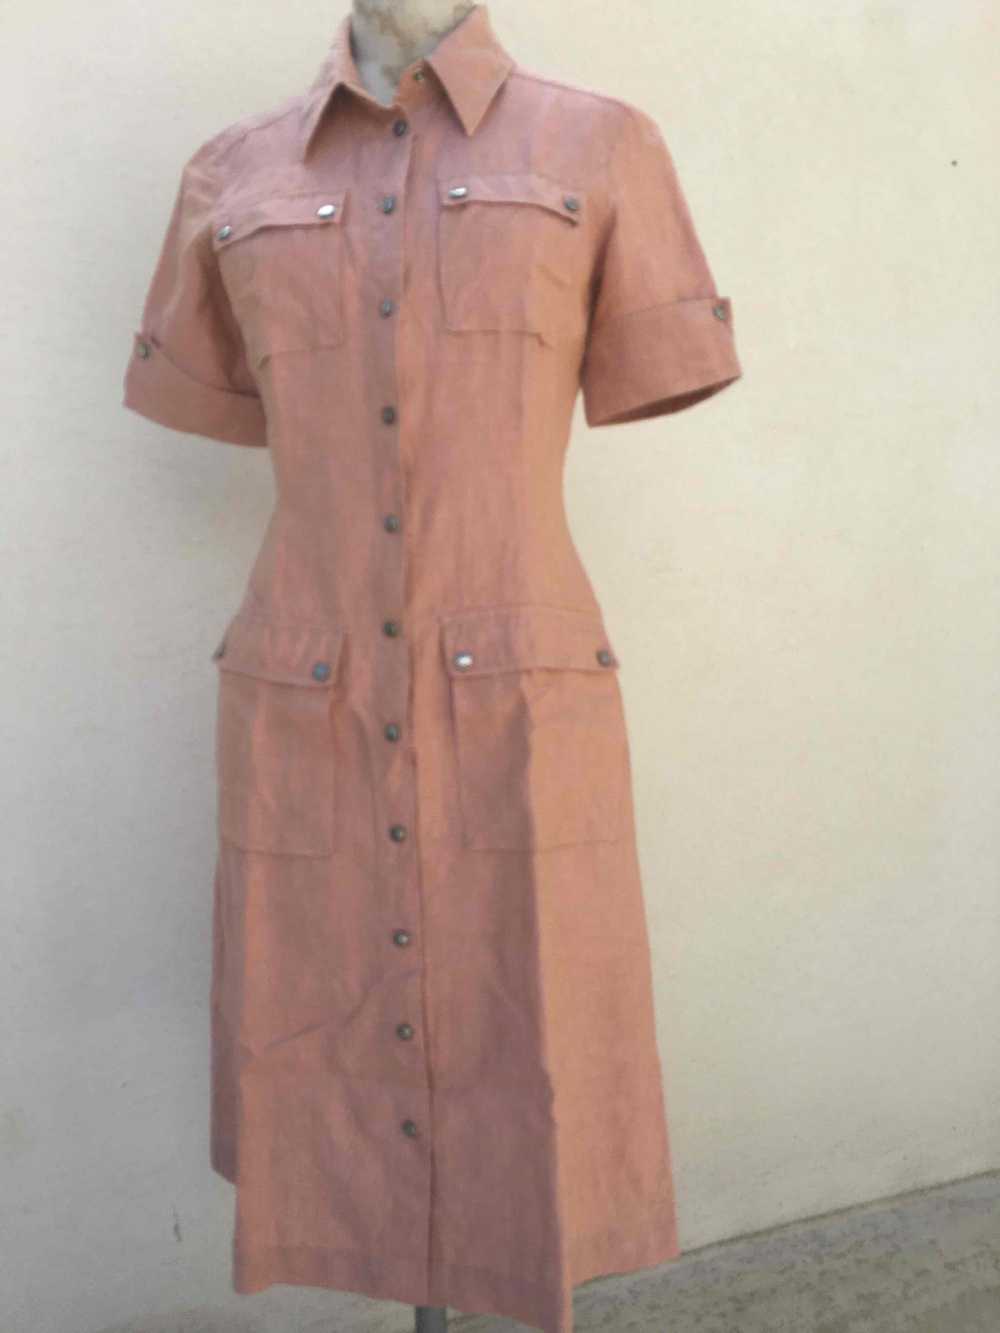 Linen shirt dress - Georges Rech Sport linen shir… - image 3